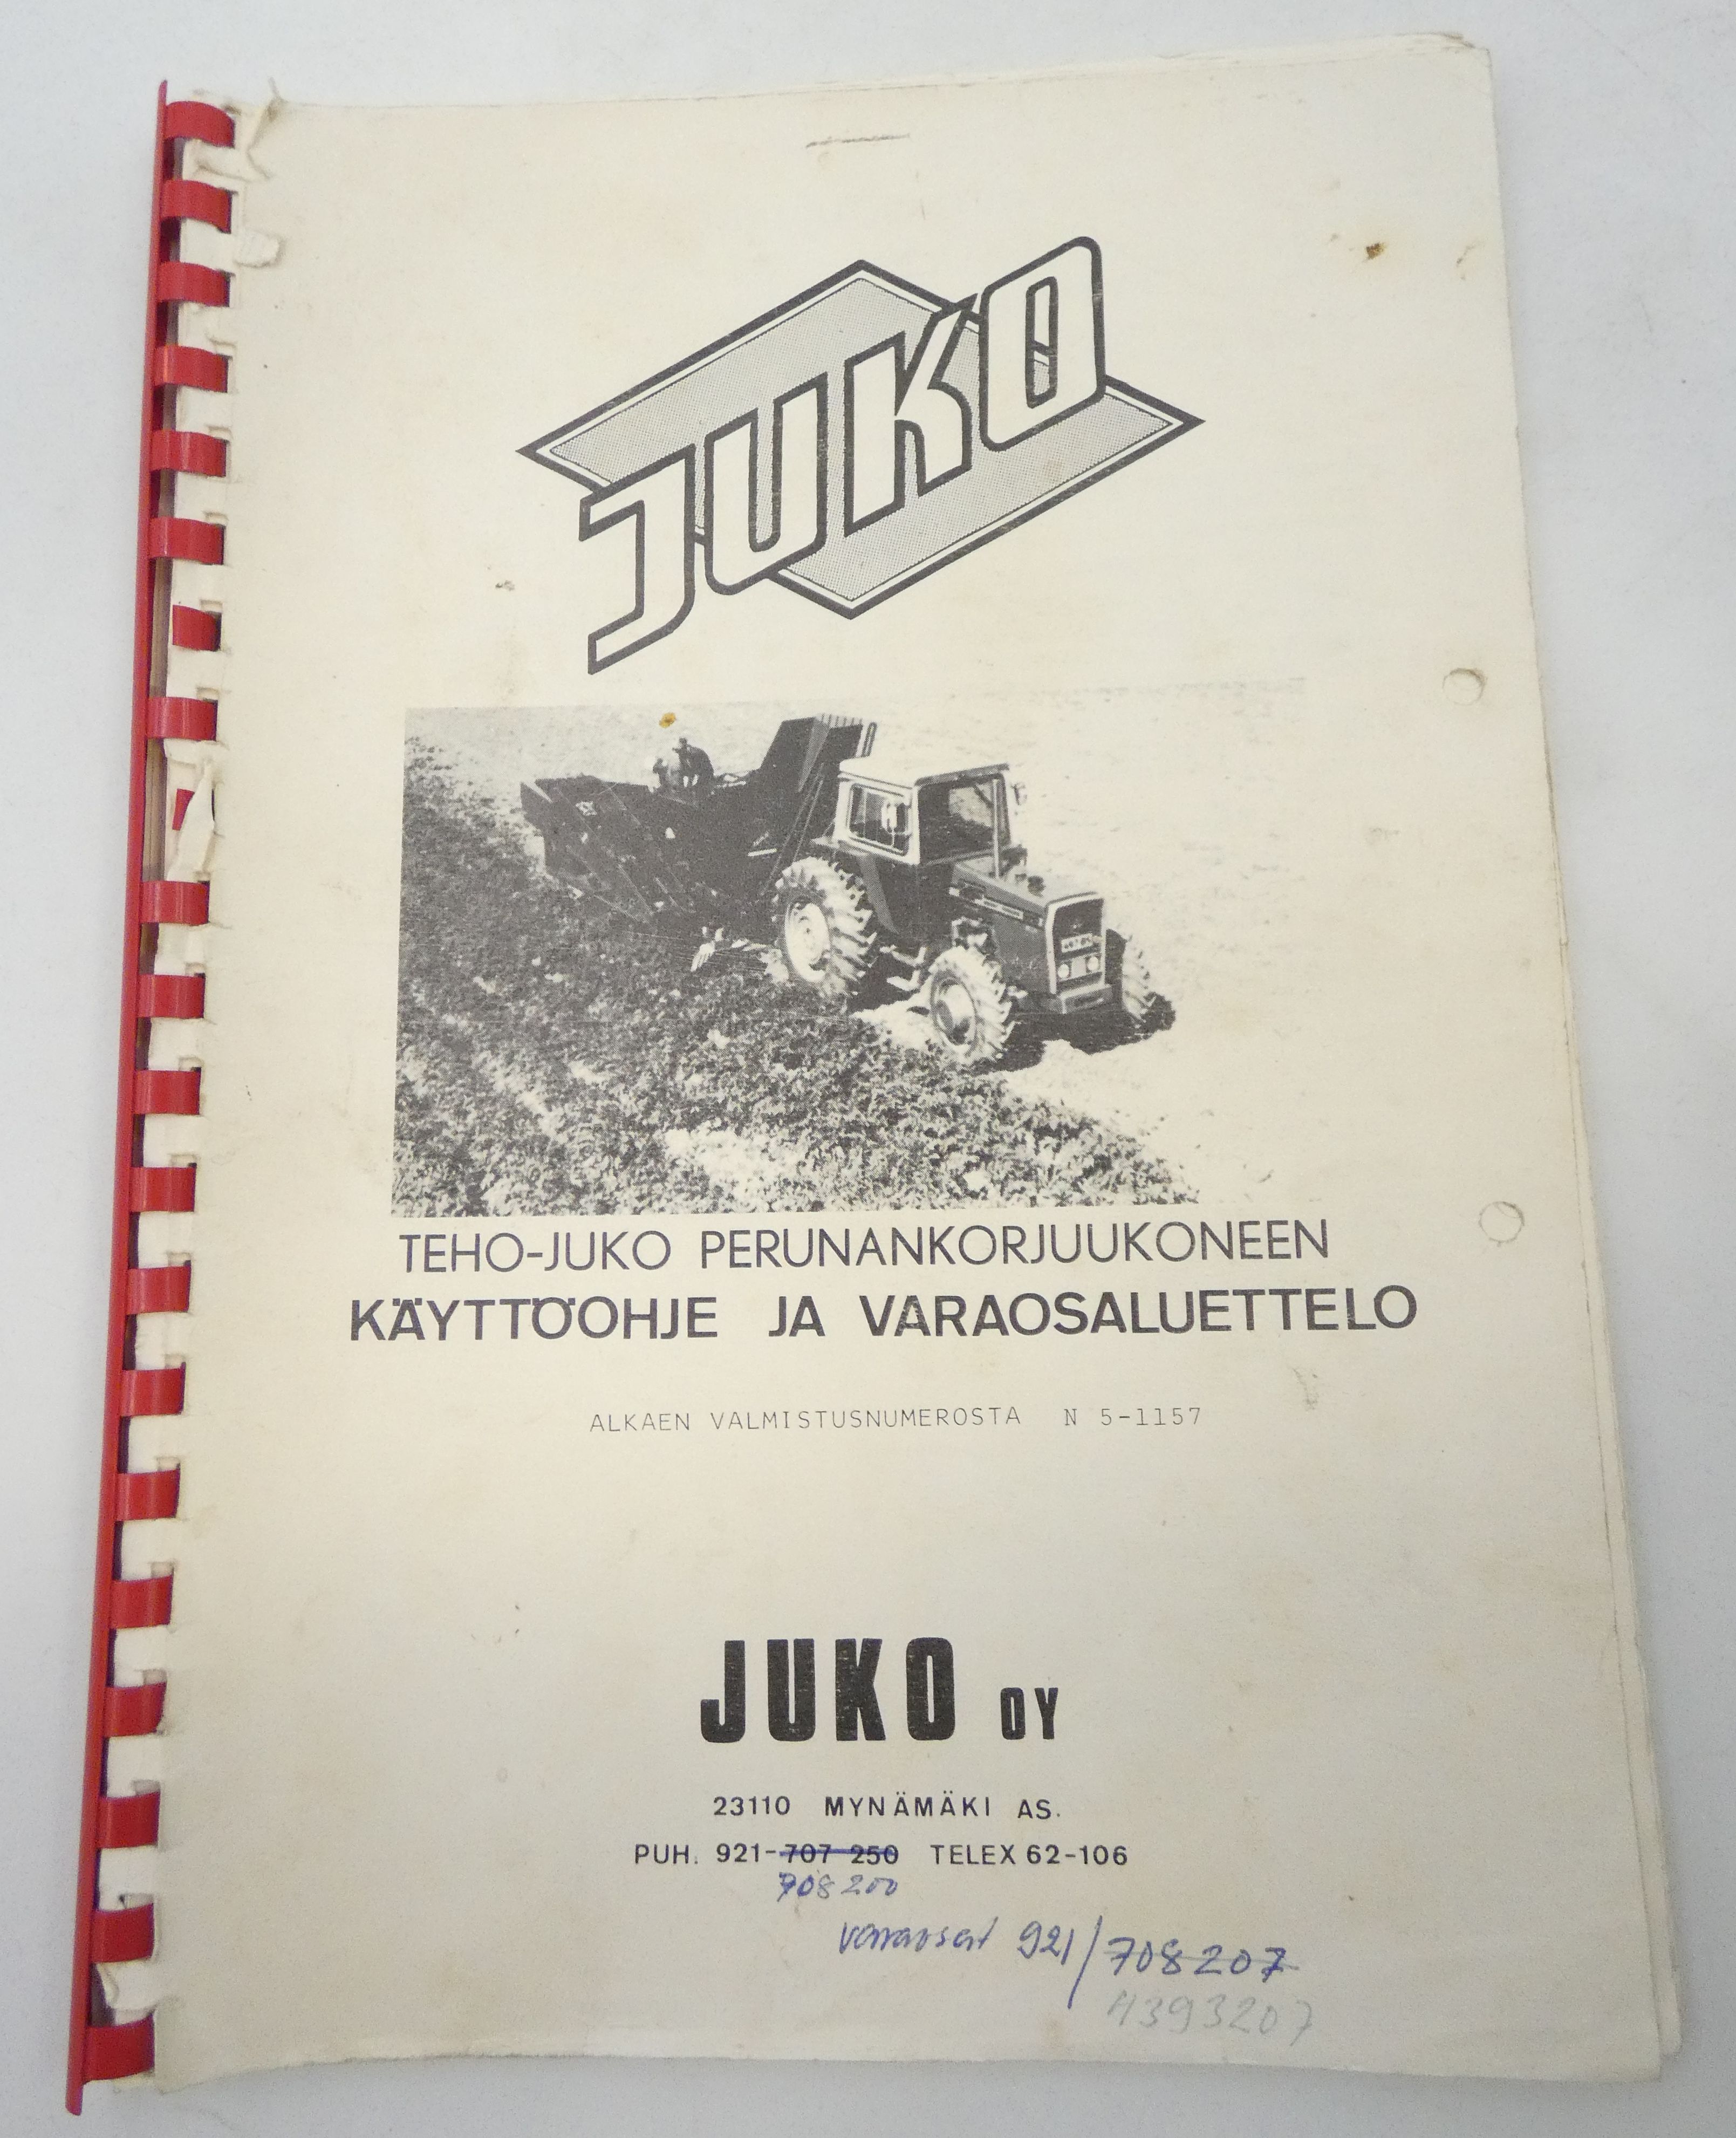 Juko Teho-Juko perunankorjauskoneen käyttöohje ja varaosaluettelo